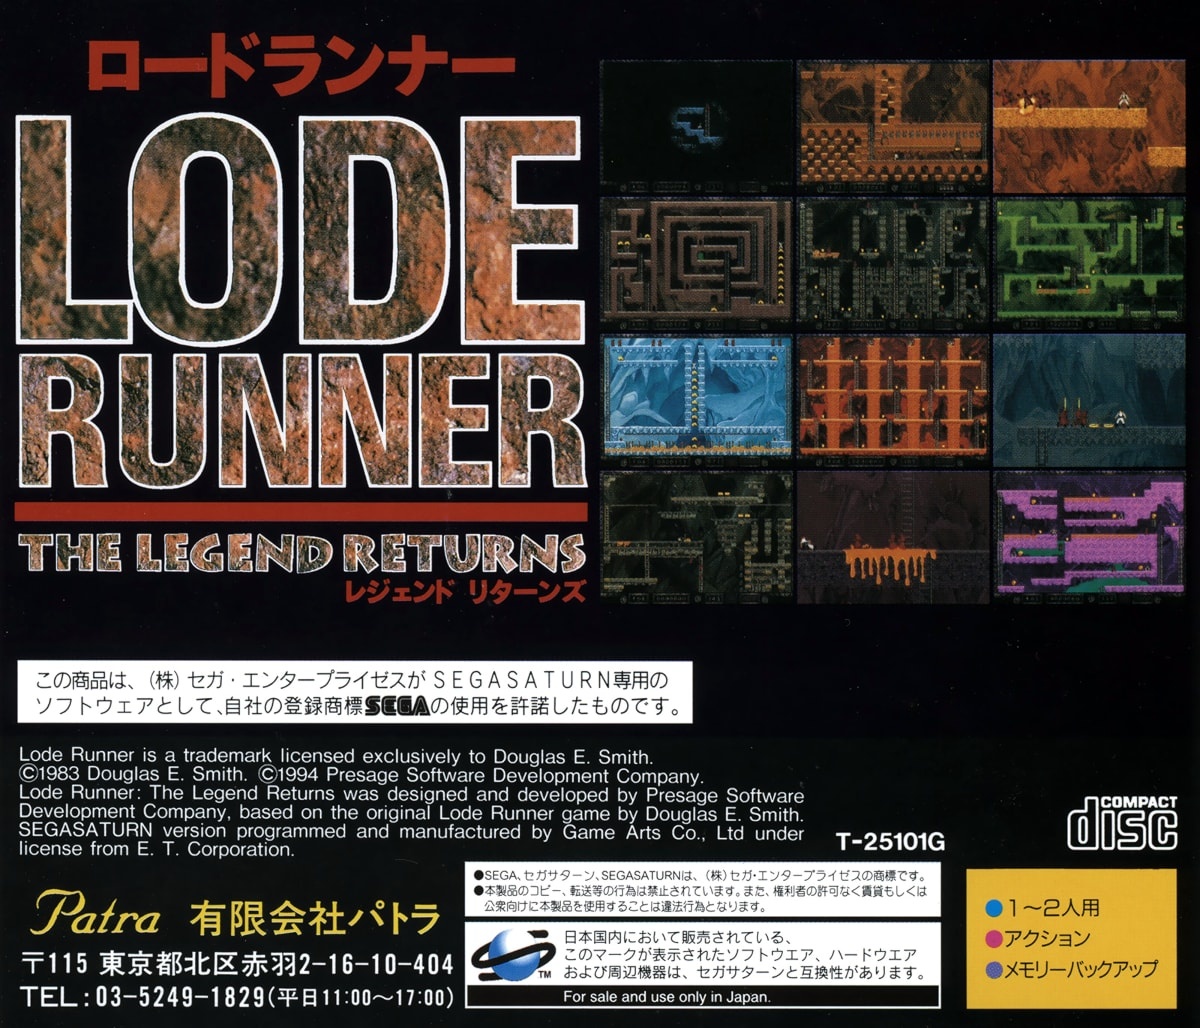 Lode Runner: The Legend Returns cover